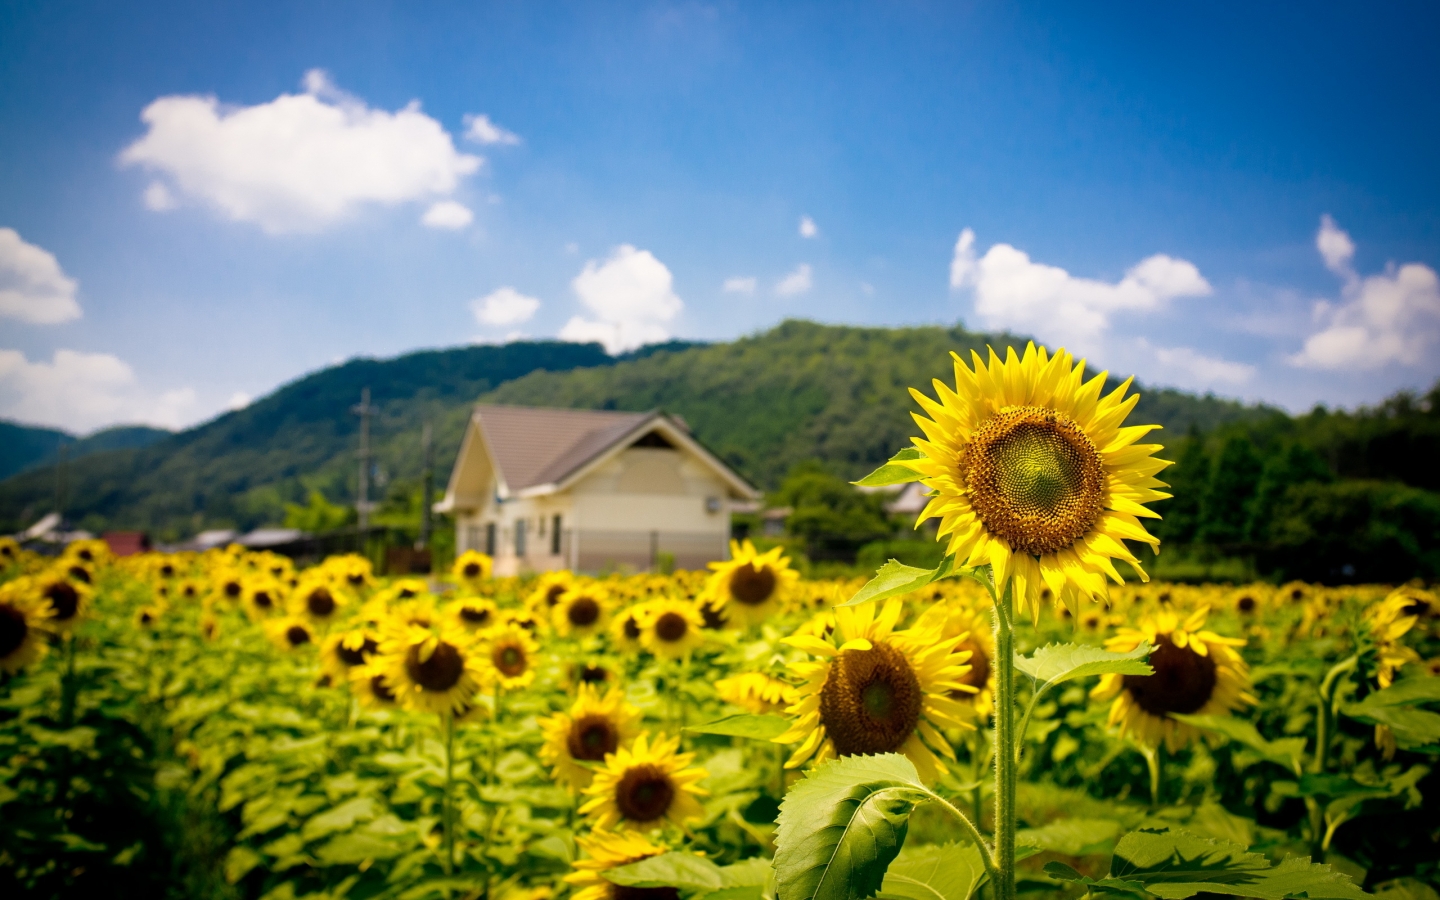 Sunflower Land for 1440 x 900 widescreen resolution